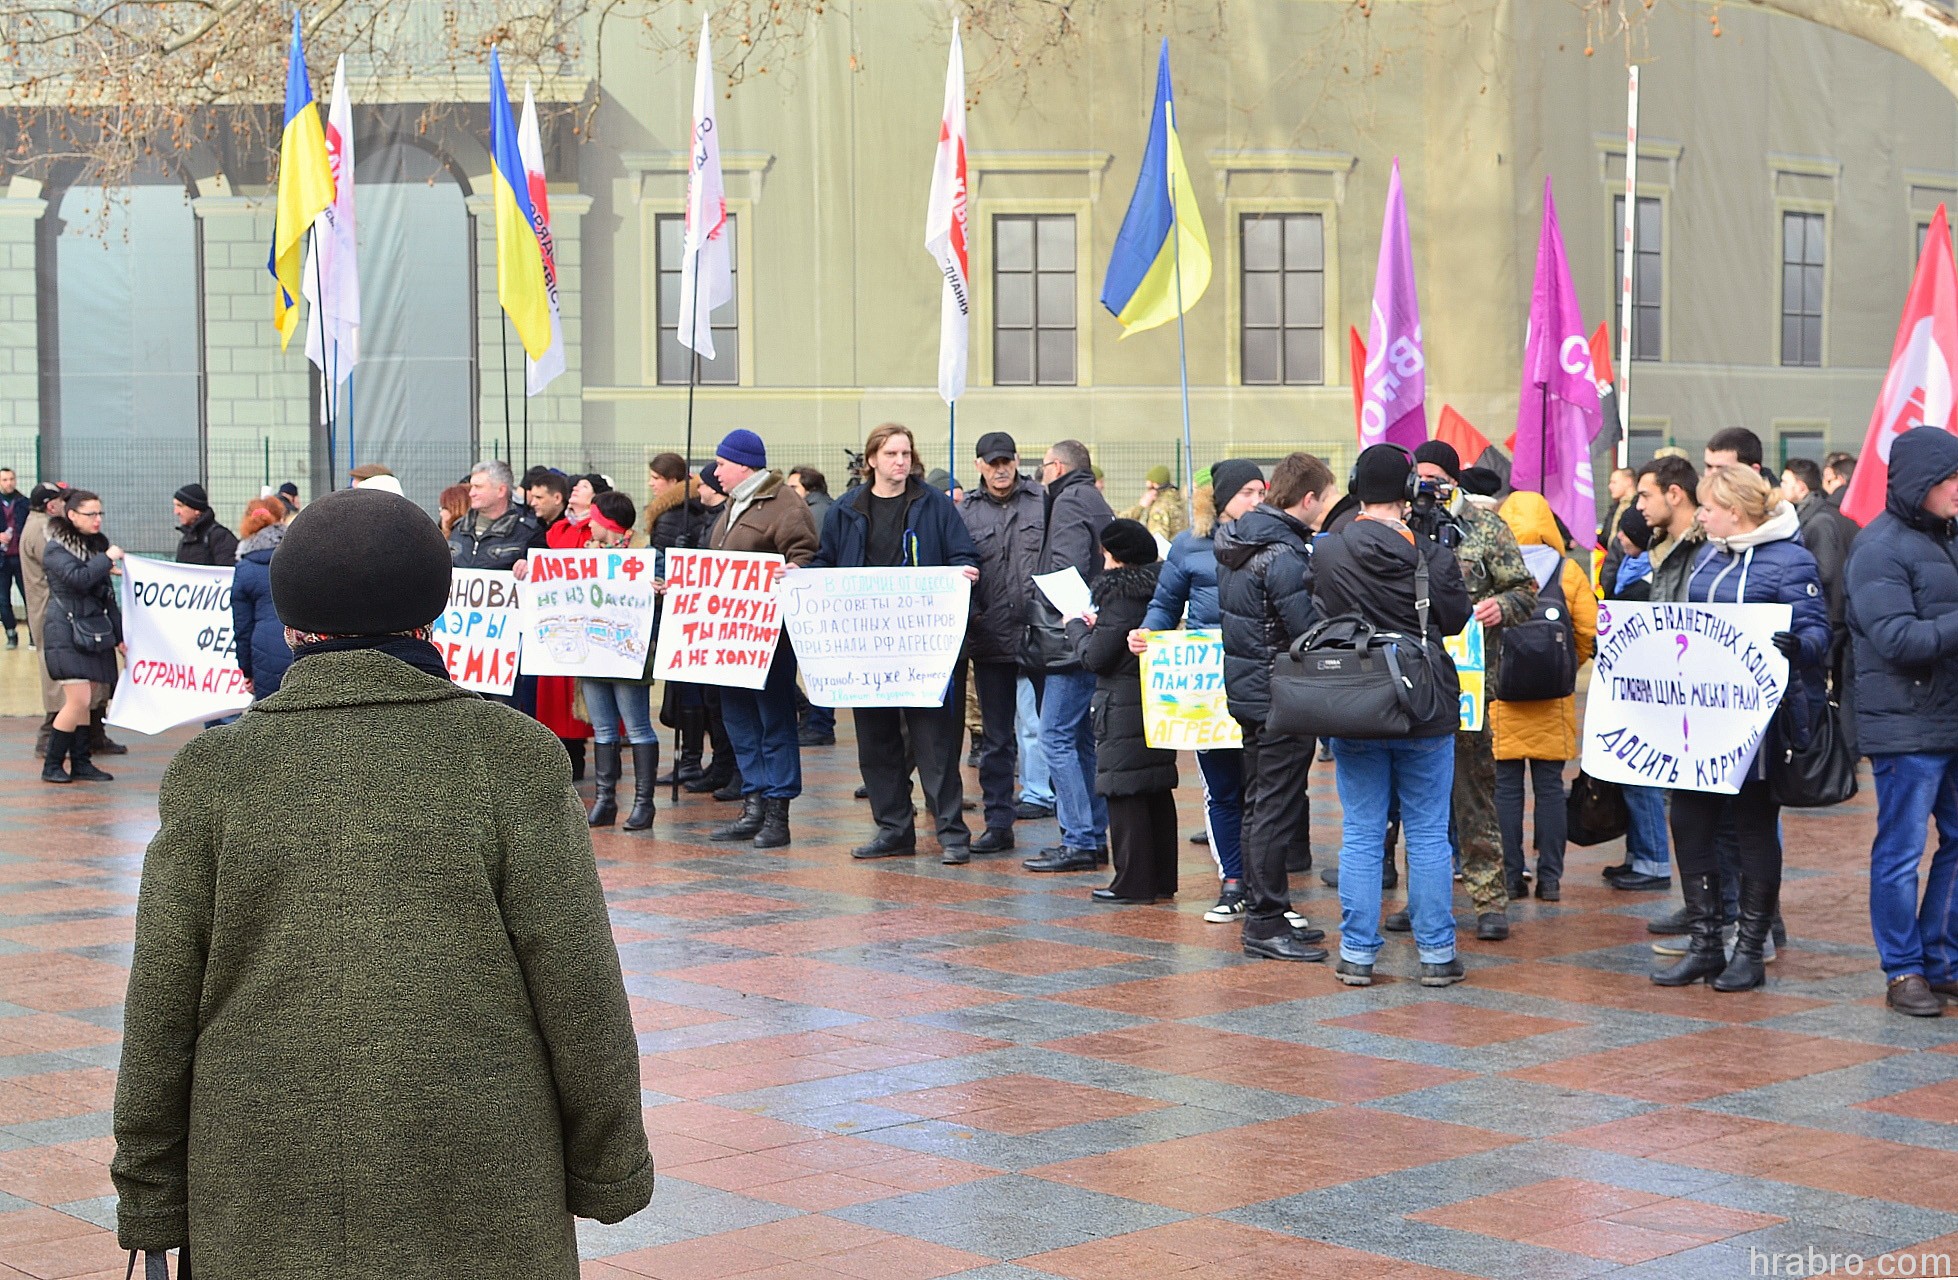 Одесса новости последнего часа. Митинг в Одессе сейчас. Одесса новости. Демонстрация а Одессе сейчас. Митинги в Одессе сегодня.